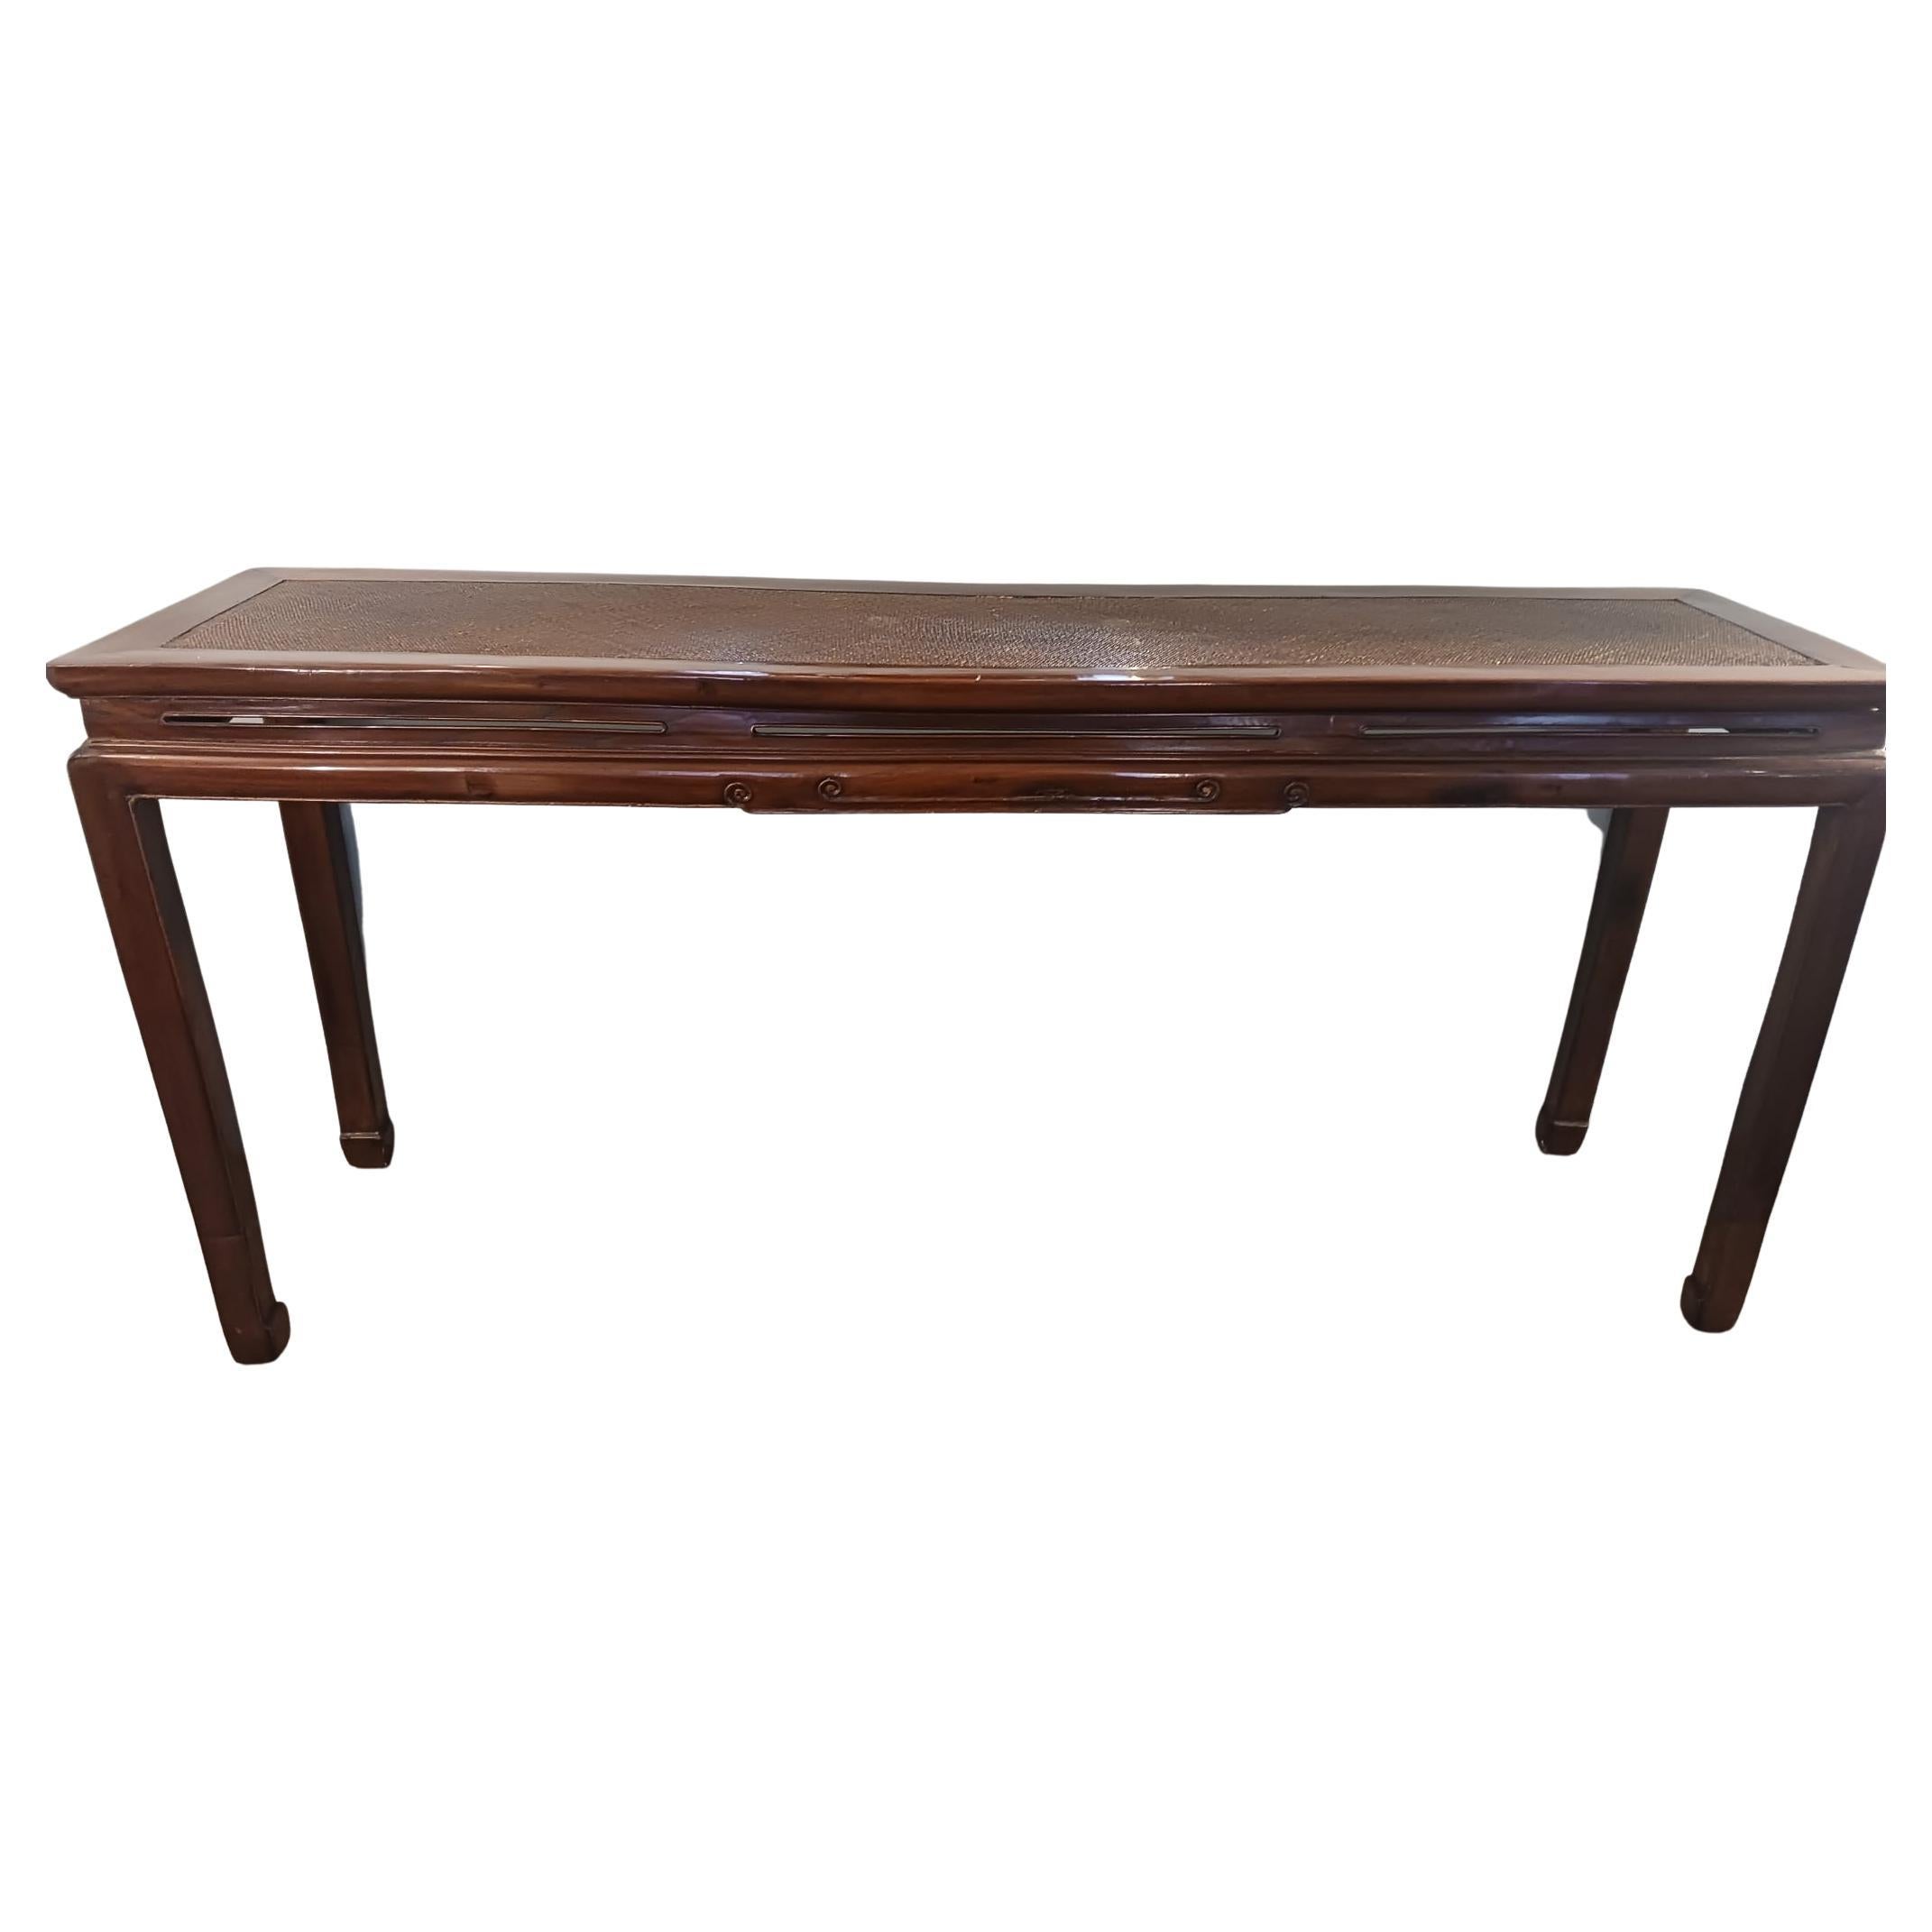 Table console en rotin et acajou du milieu du 19e siècle.
Restauré de manière conservatrice.
Taille 182 x 46 H 85 cm.
 